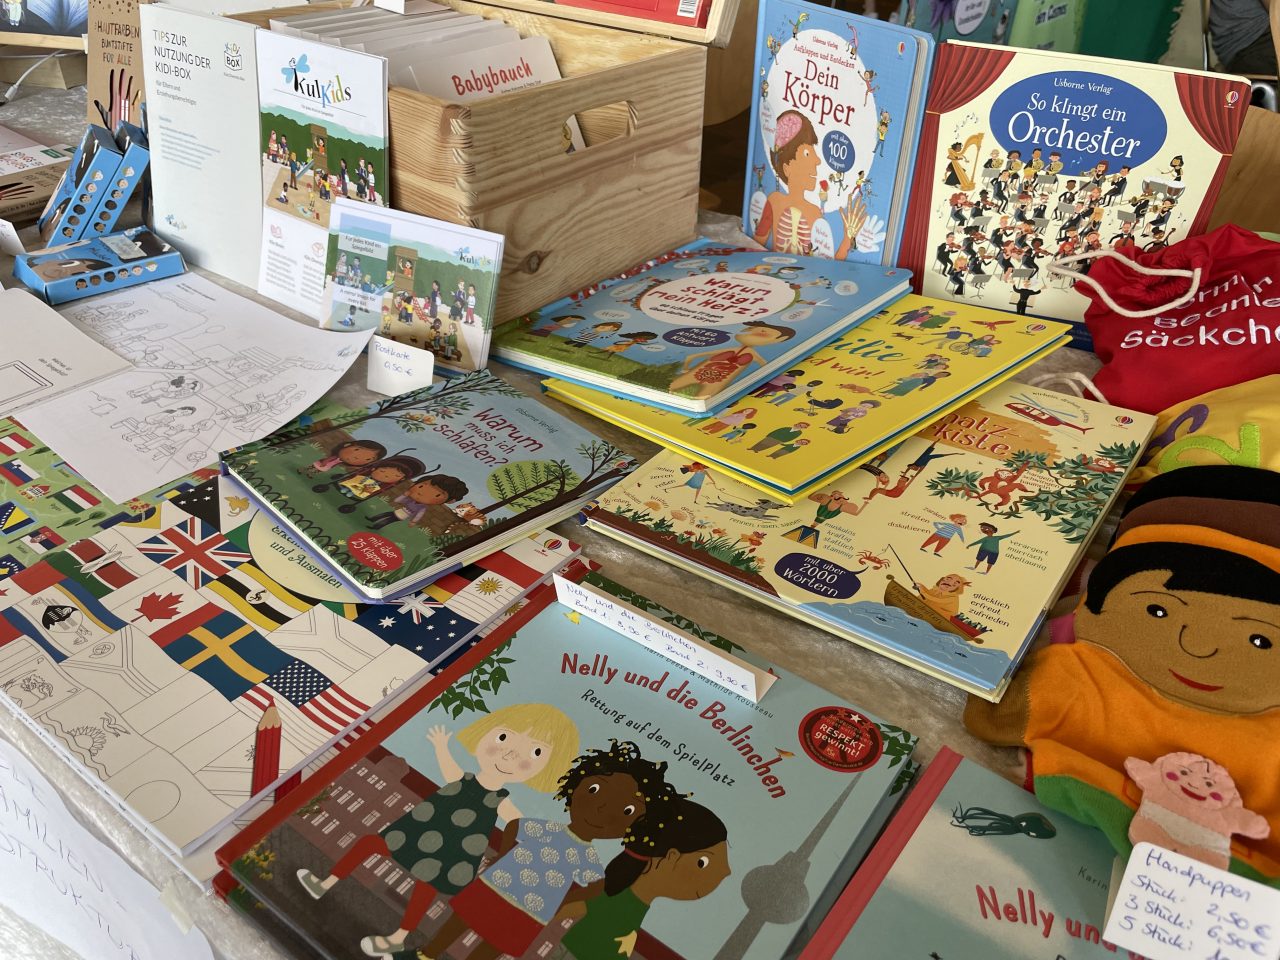 KulKids präsentiert diverse Kinderbücher auf einem Tisch